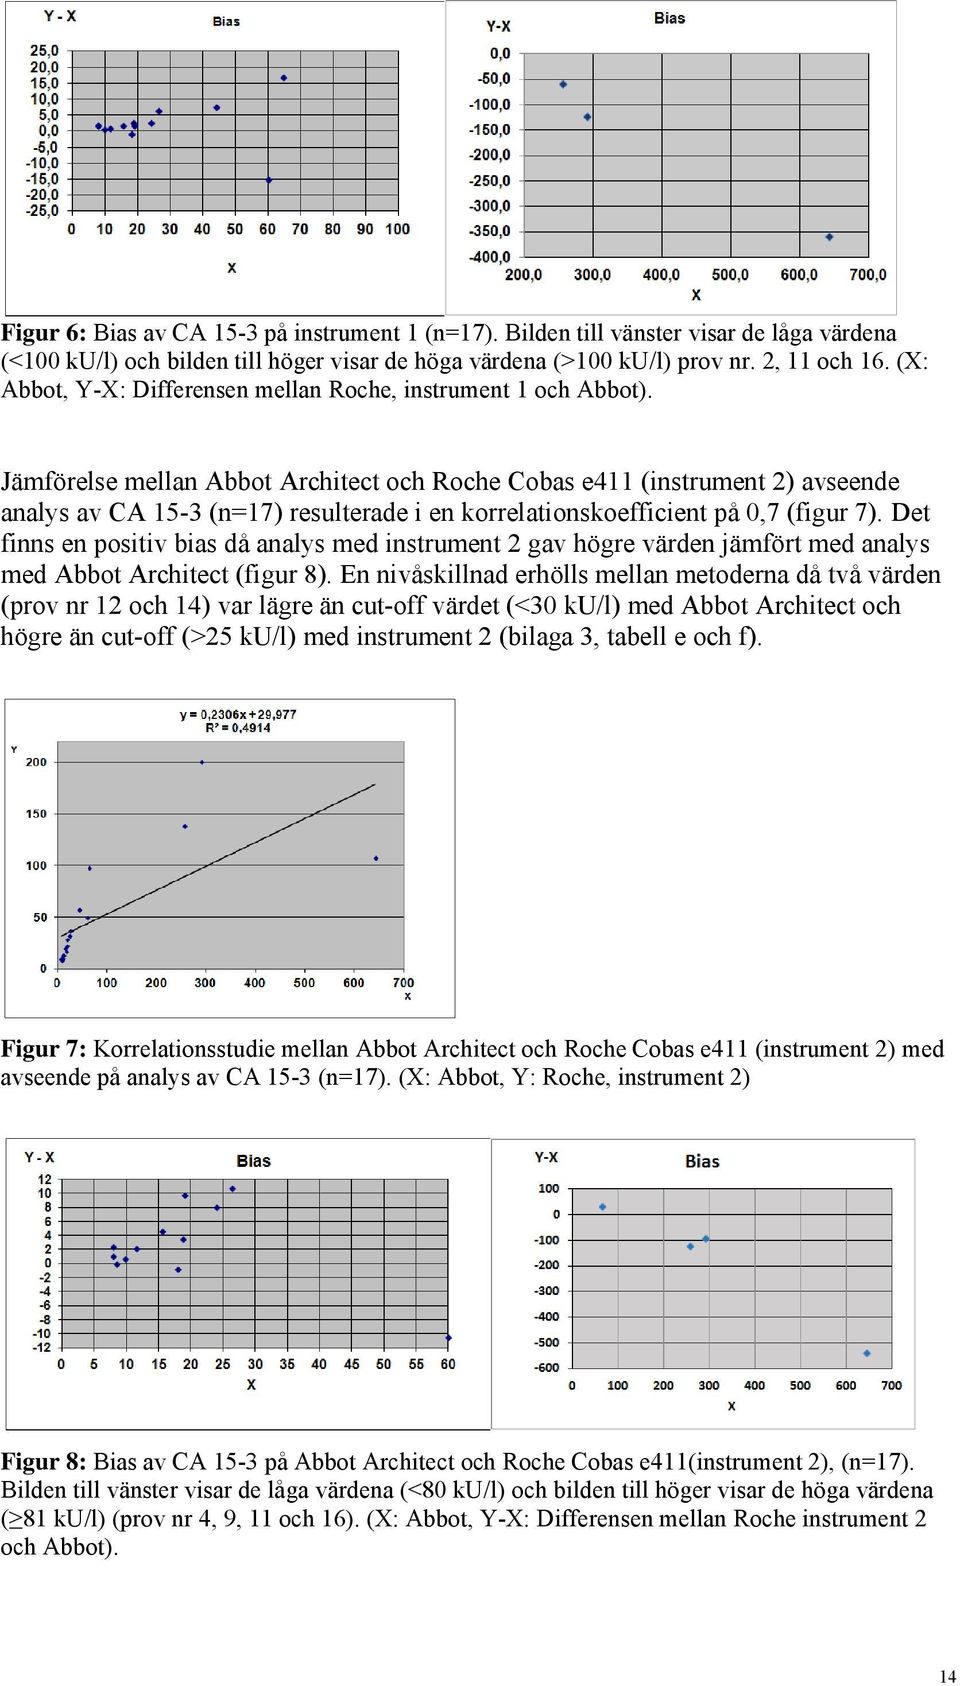 Jämförelse mellan Abbot Architect och Roche Cobas e411 (instrument 2) avseende analys av CA 15-3 (n=17) resulterade i en korrelationskoefficient på 0,7 (figur 7).